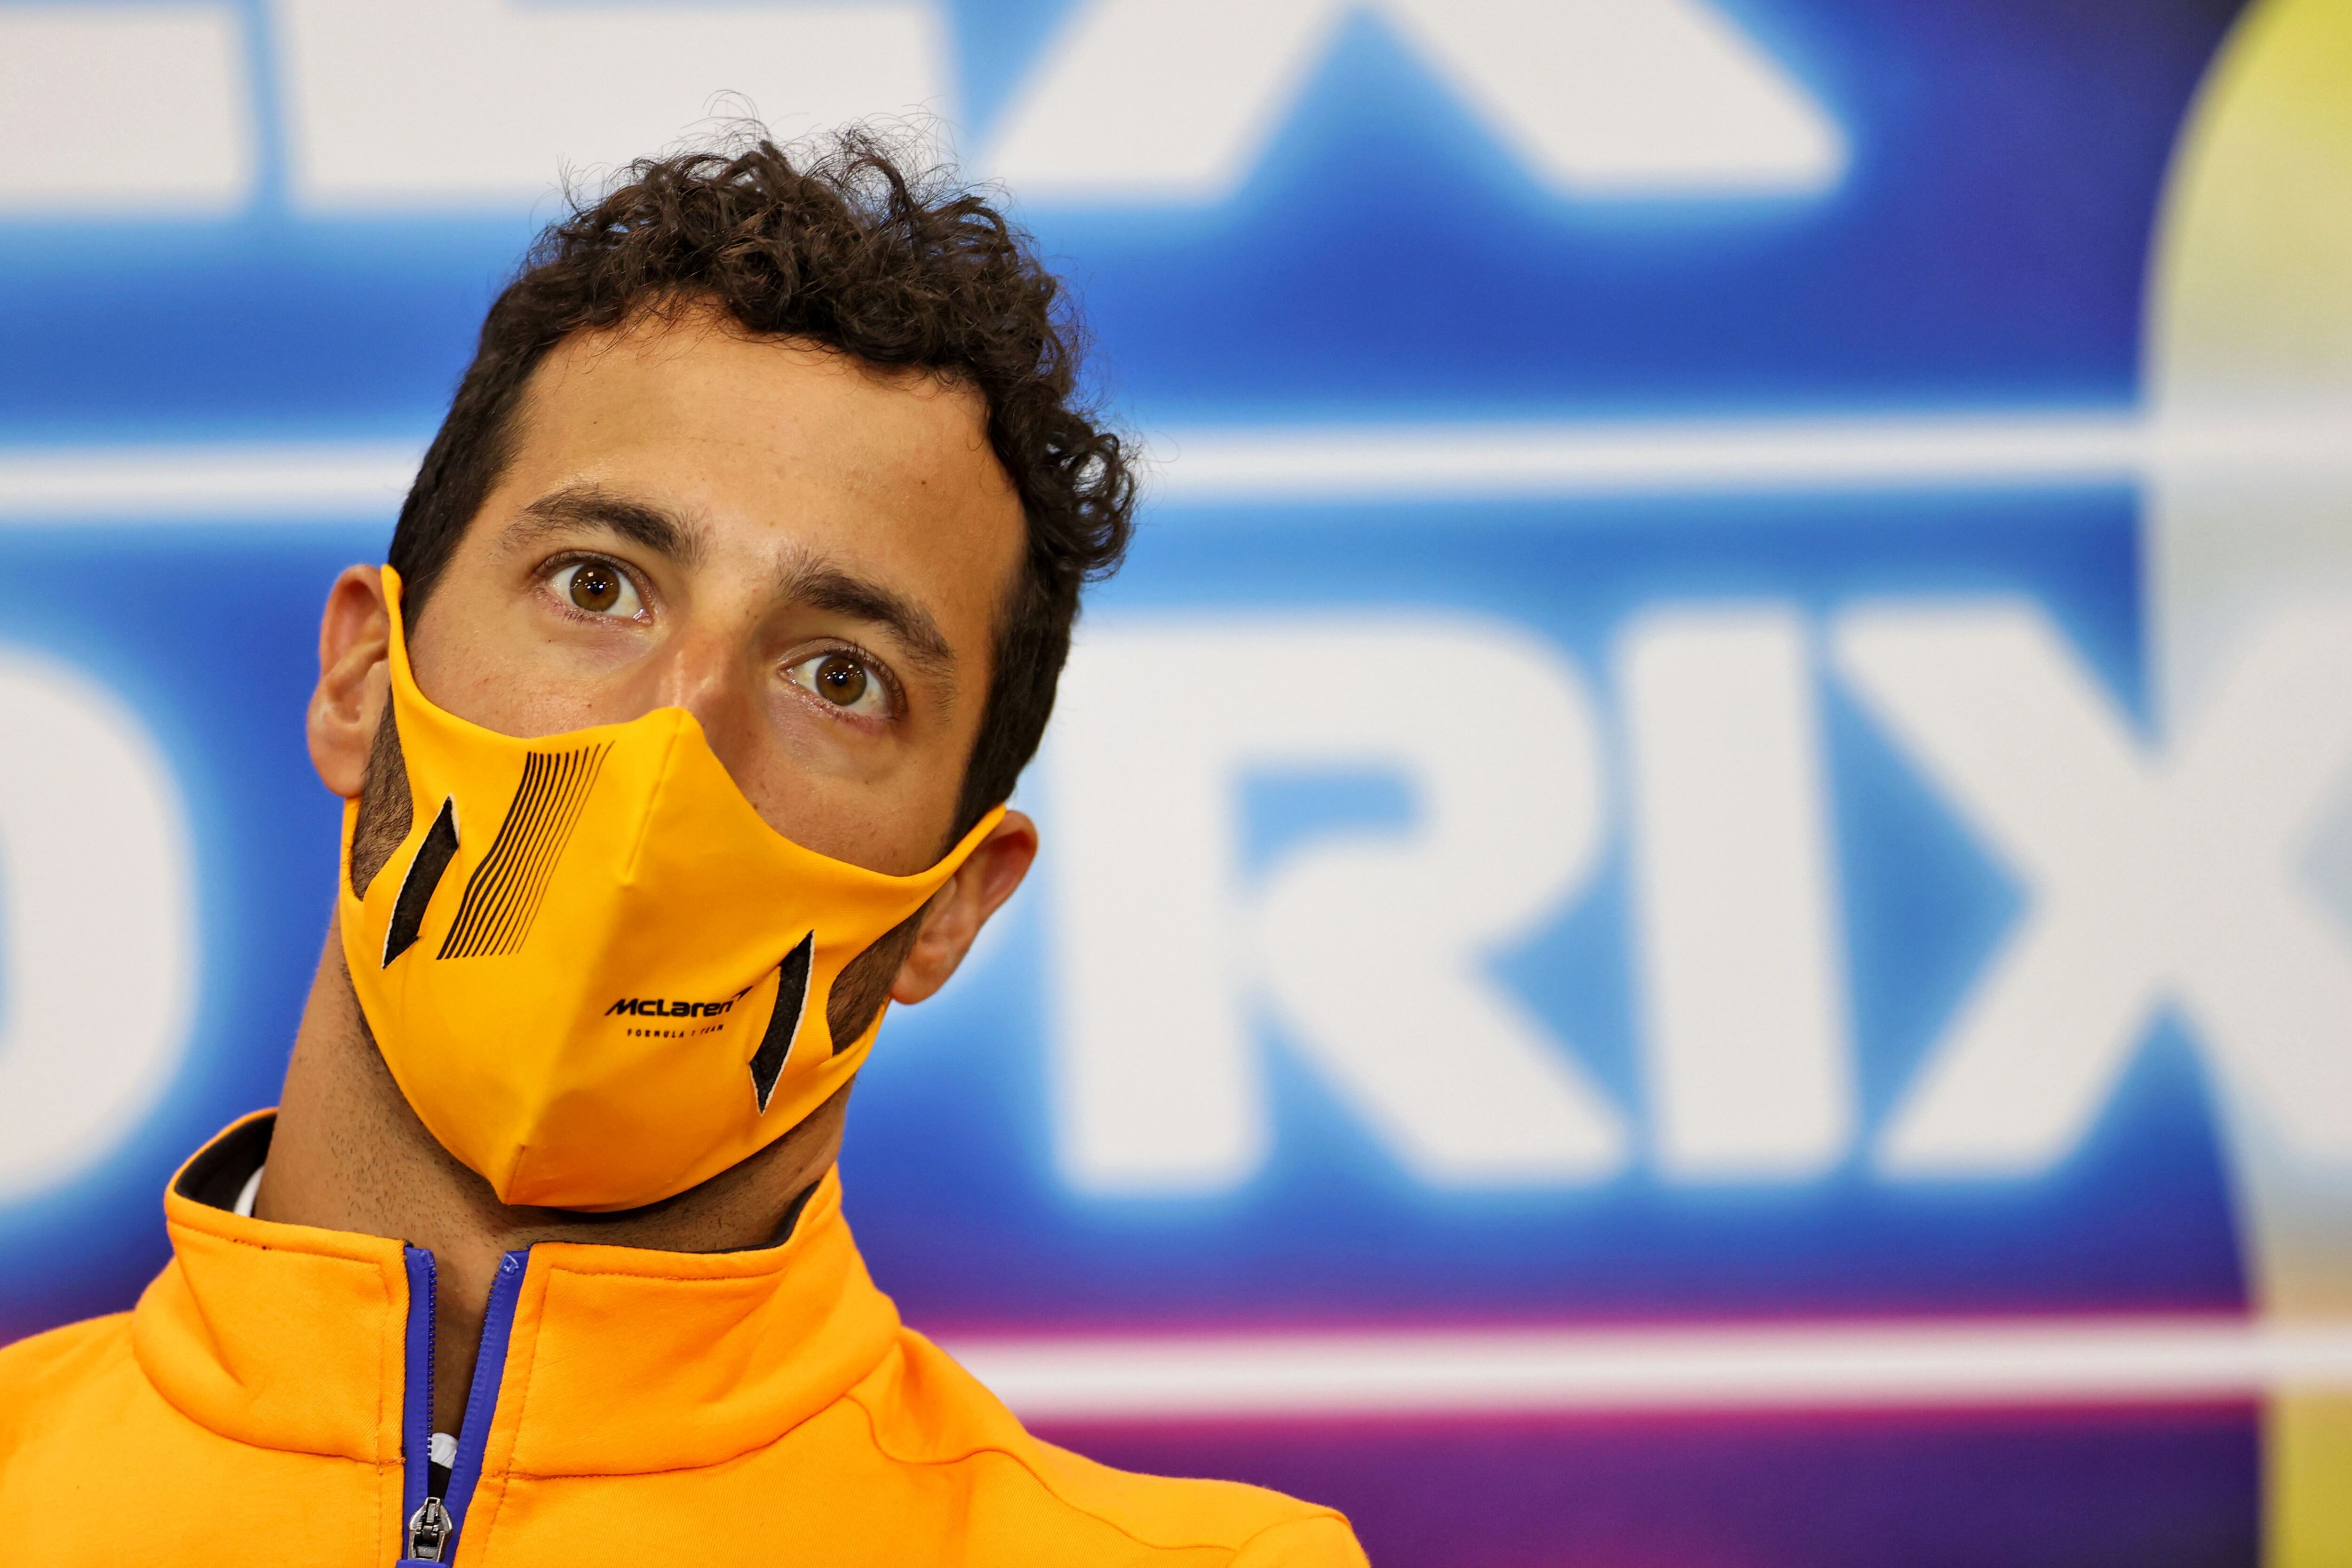 Daniel Ricciardo, piloto de McLaren en la Fórmula 1. Foto: REUTERS